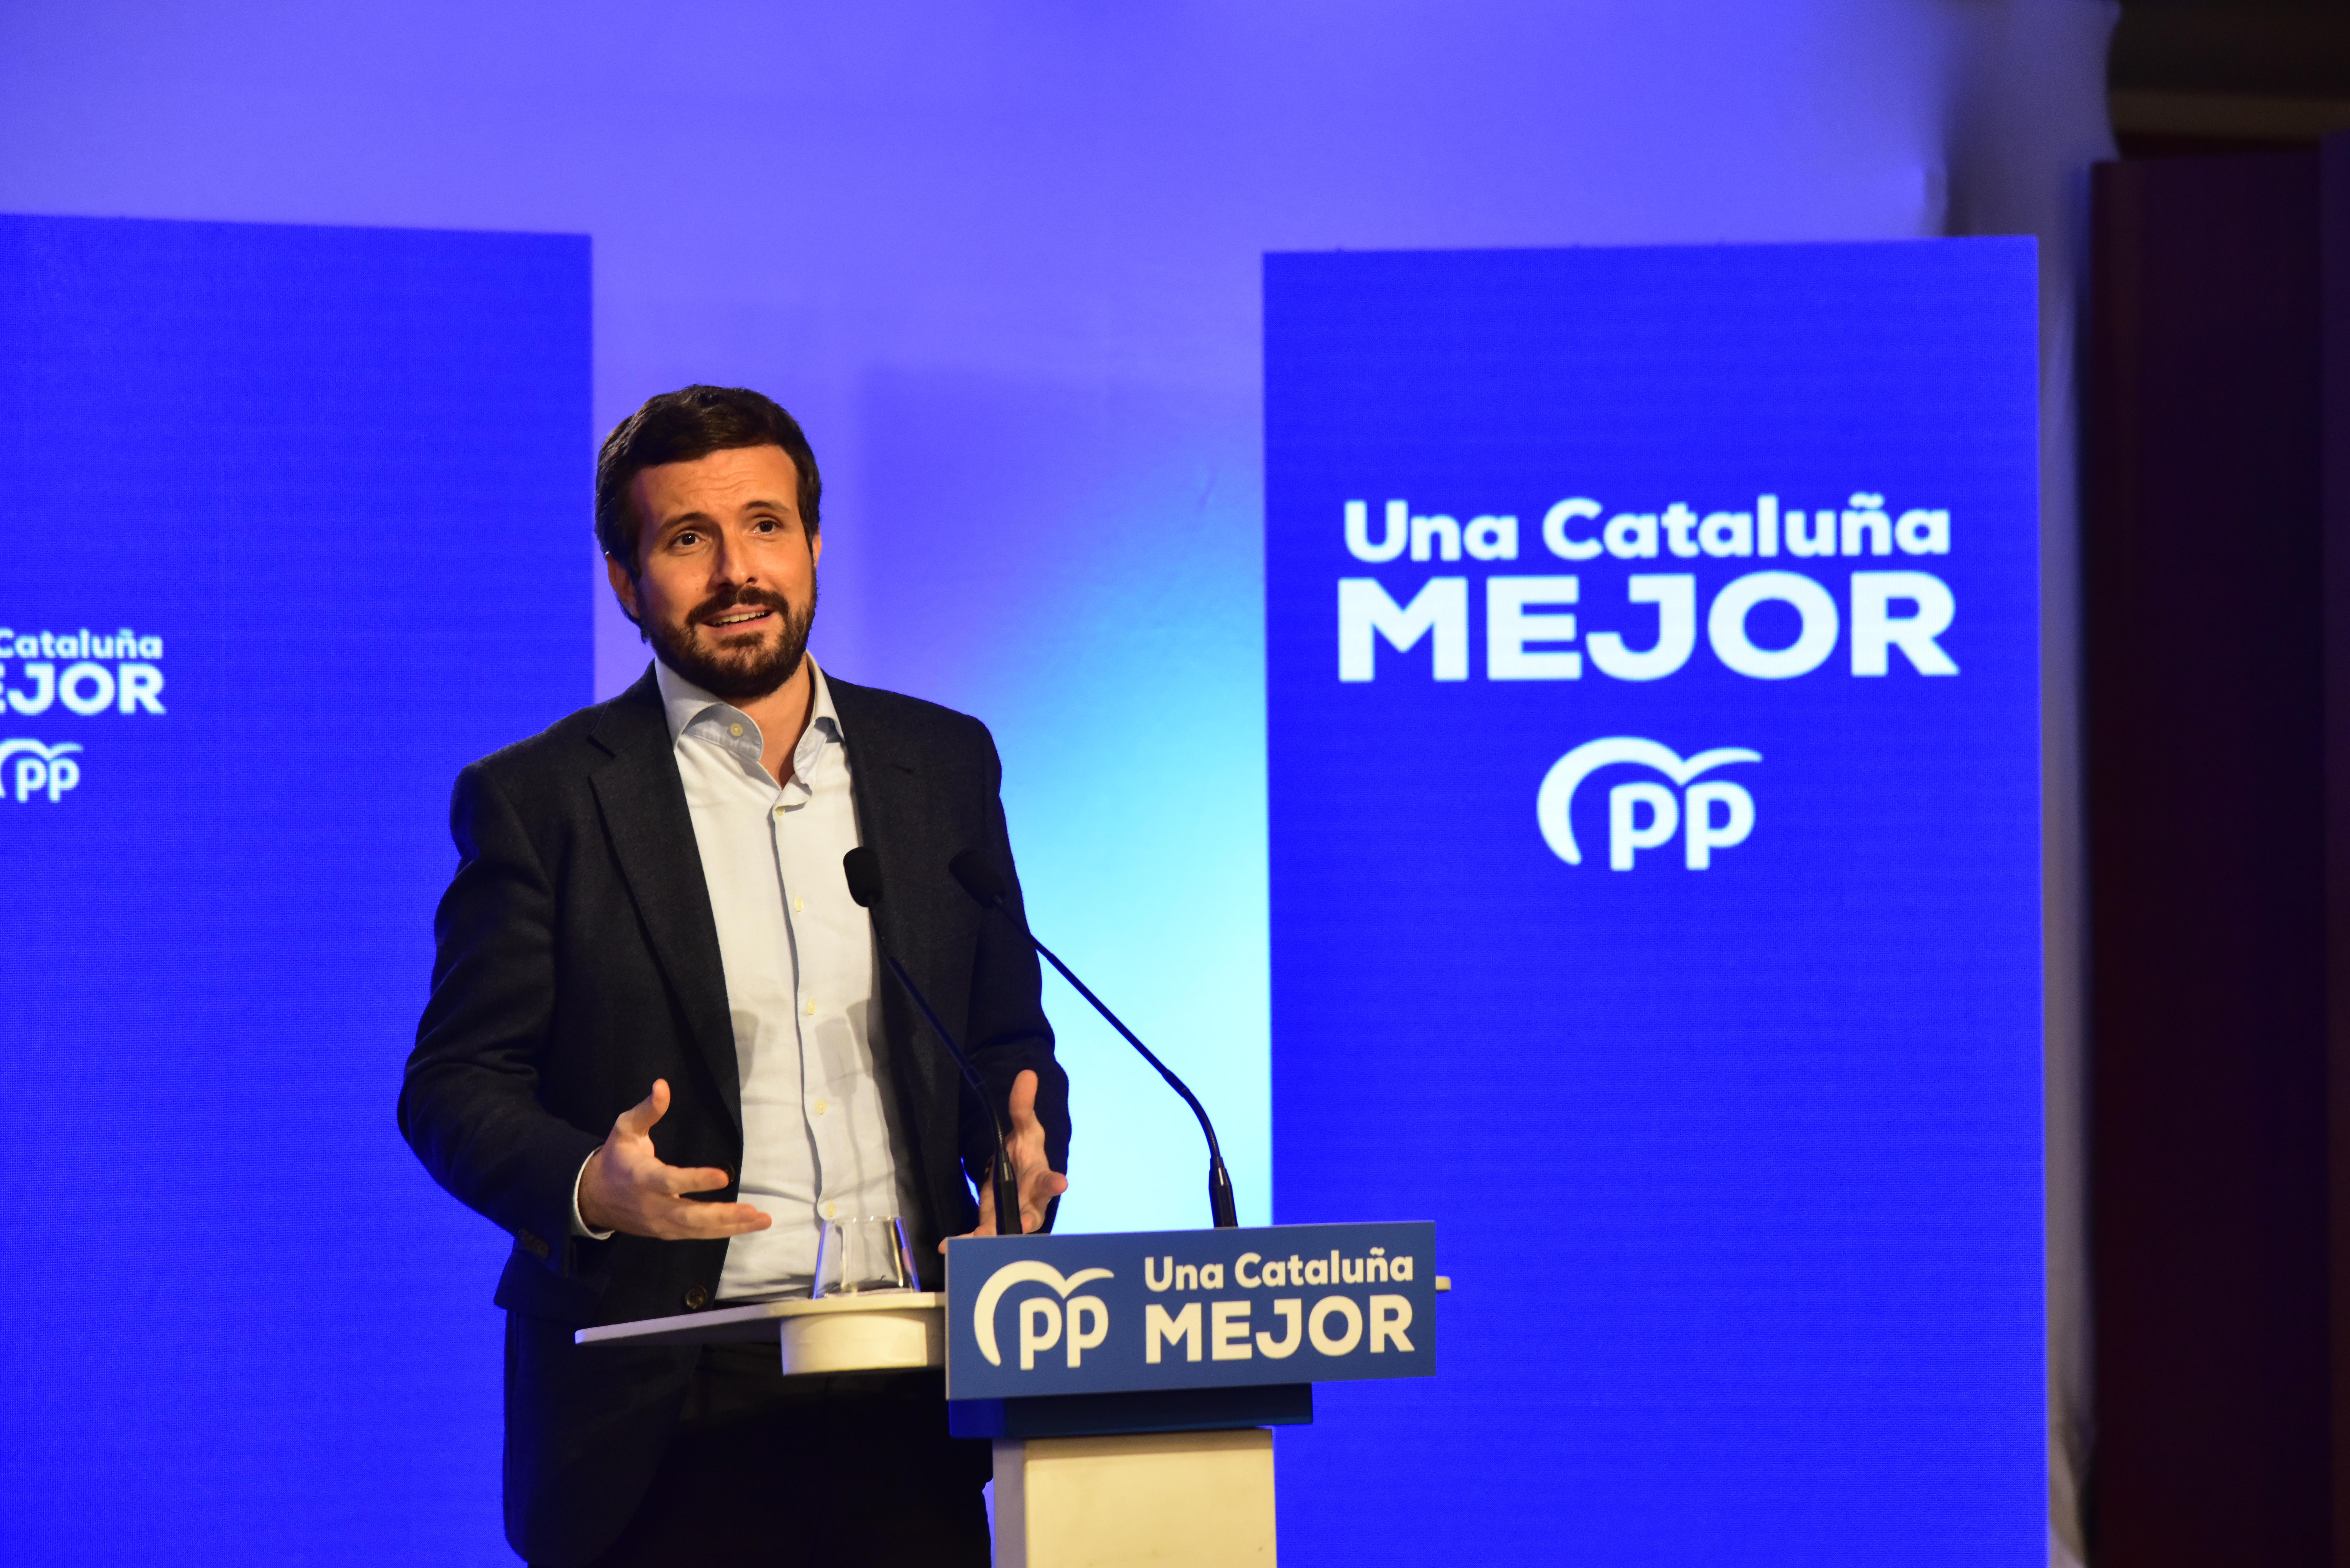 El líder del PP, Pablo Casado, interviene durante el inicio de la campaña electoral para los comicios del 14 de febrero, en el Hotel Grand Marina, en Barcelona, Catalunya (España), a 28 de enero de 2021.